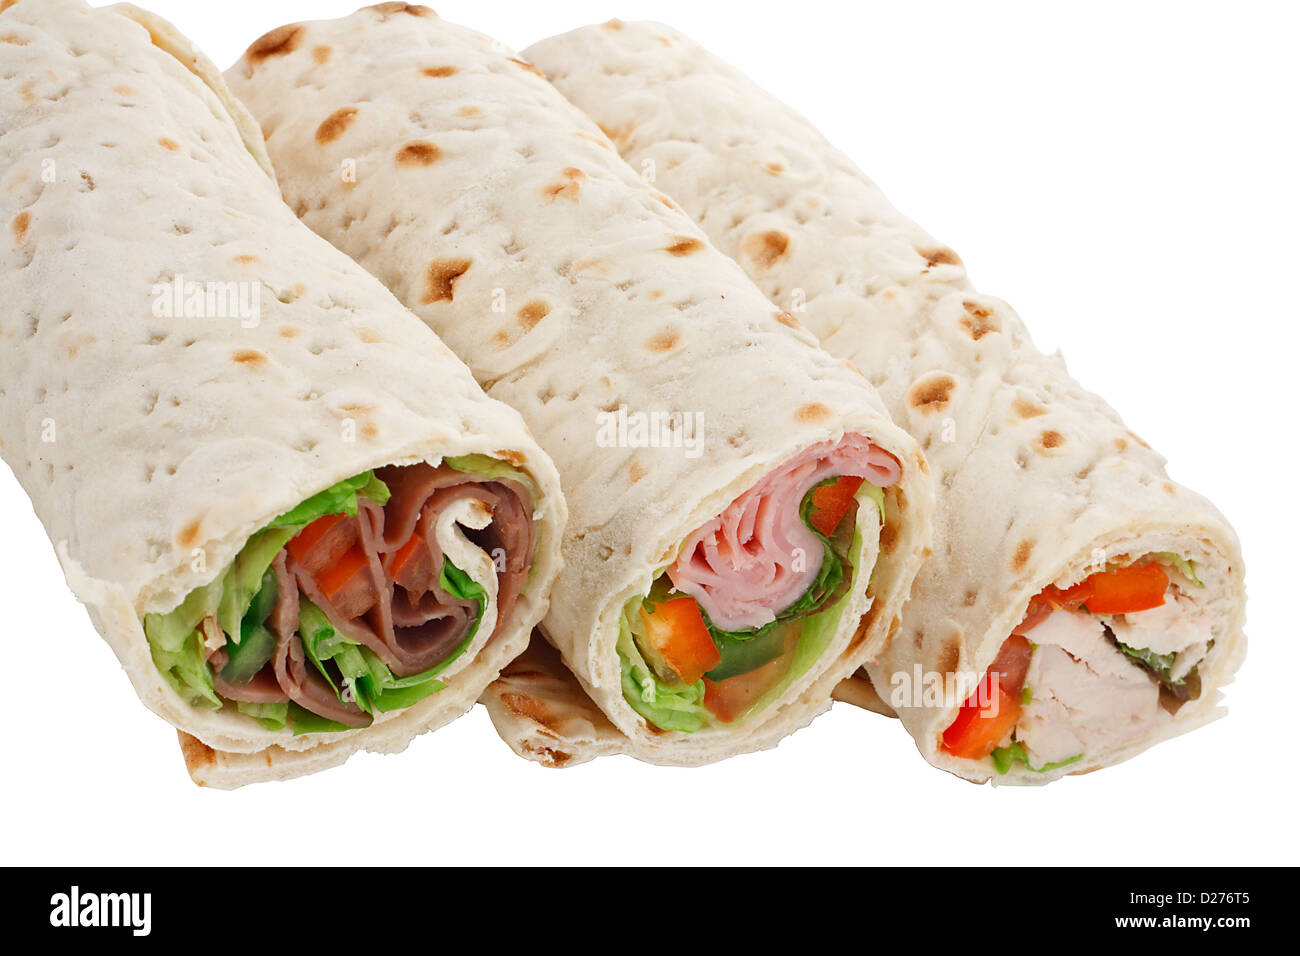 Ein toller snack oder ein leichtes Mittagessen, in Scheiben geschnitten Sandwich Wraps mit verschiedenen Füllungen Stockfoto